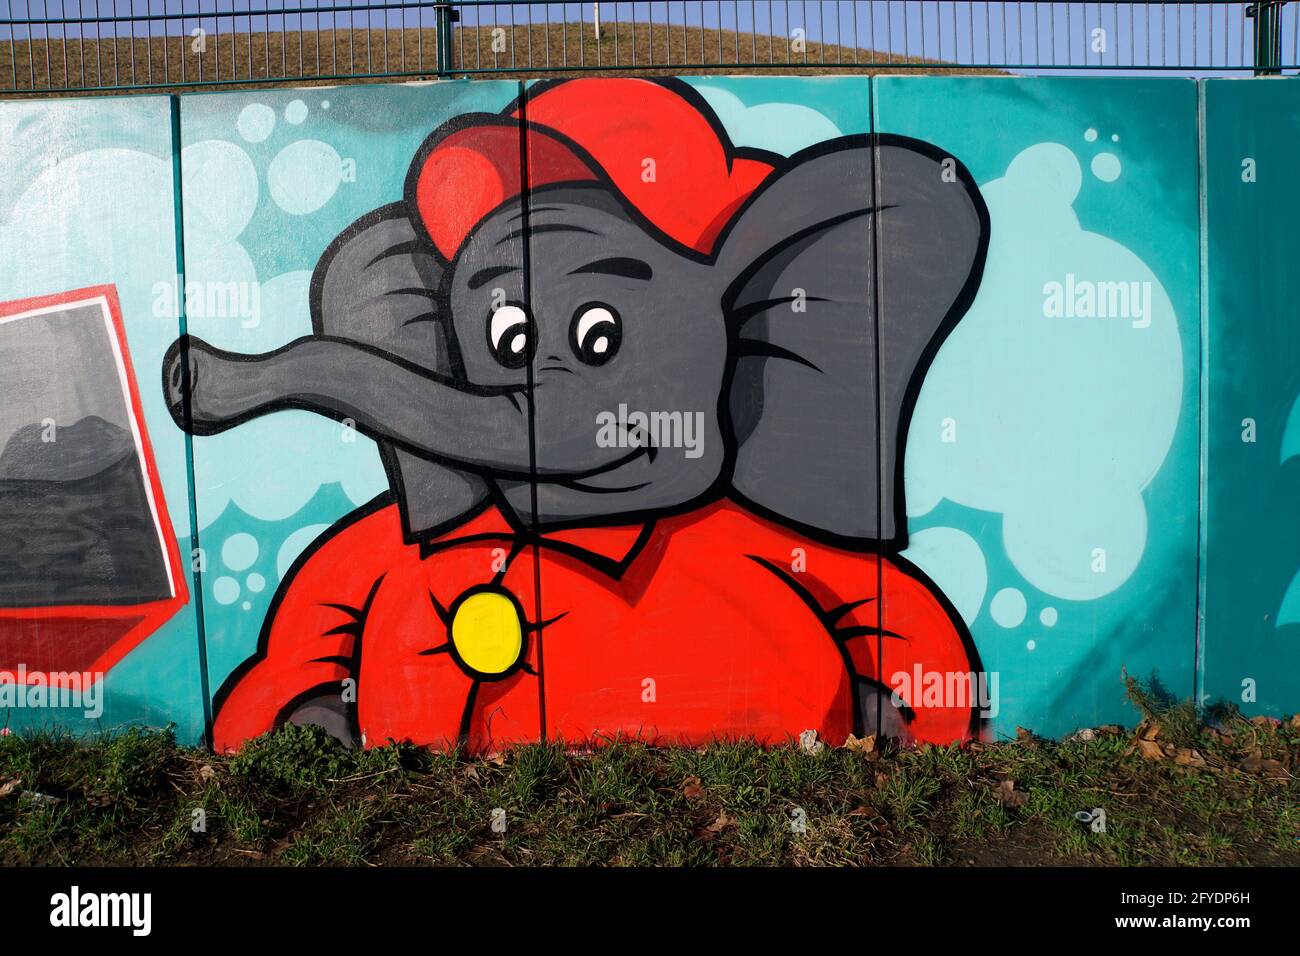 Graffity an einer Mauer - Elefant mit roter Jacke und Mütze, Köln, Nordrhein-Westfalen, Deutschland Stockfoto